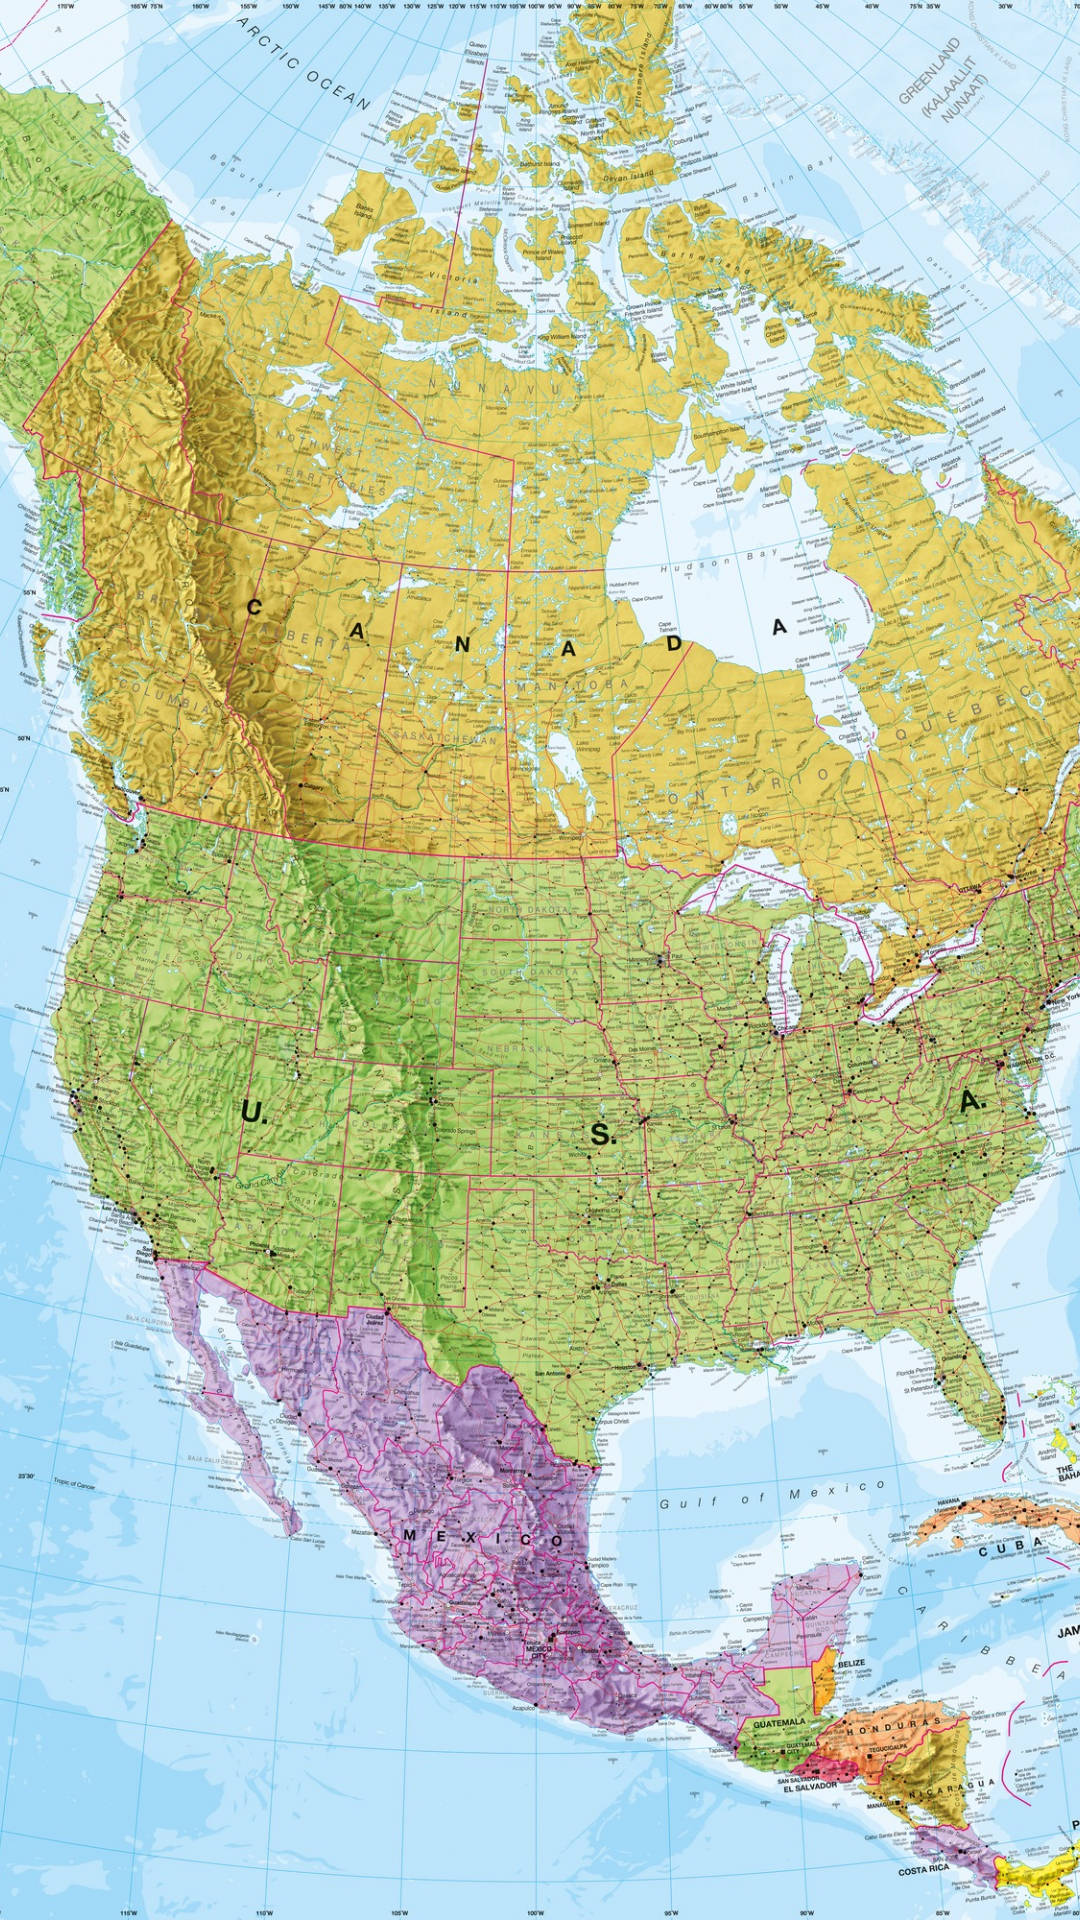 Einekarte Von Nordamerika Mit Den Hauptstädten Und Größeren Städten. Wallpaper